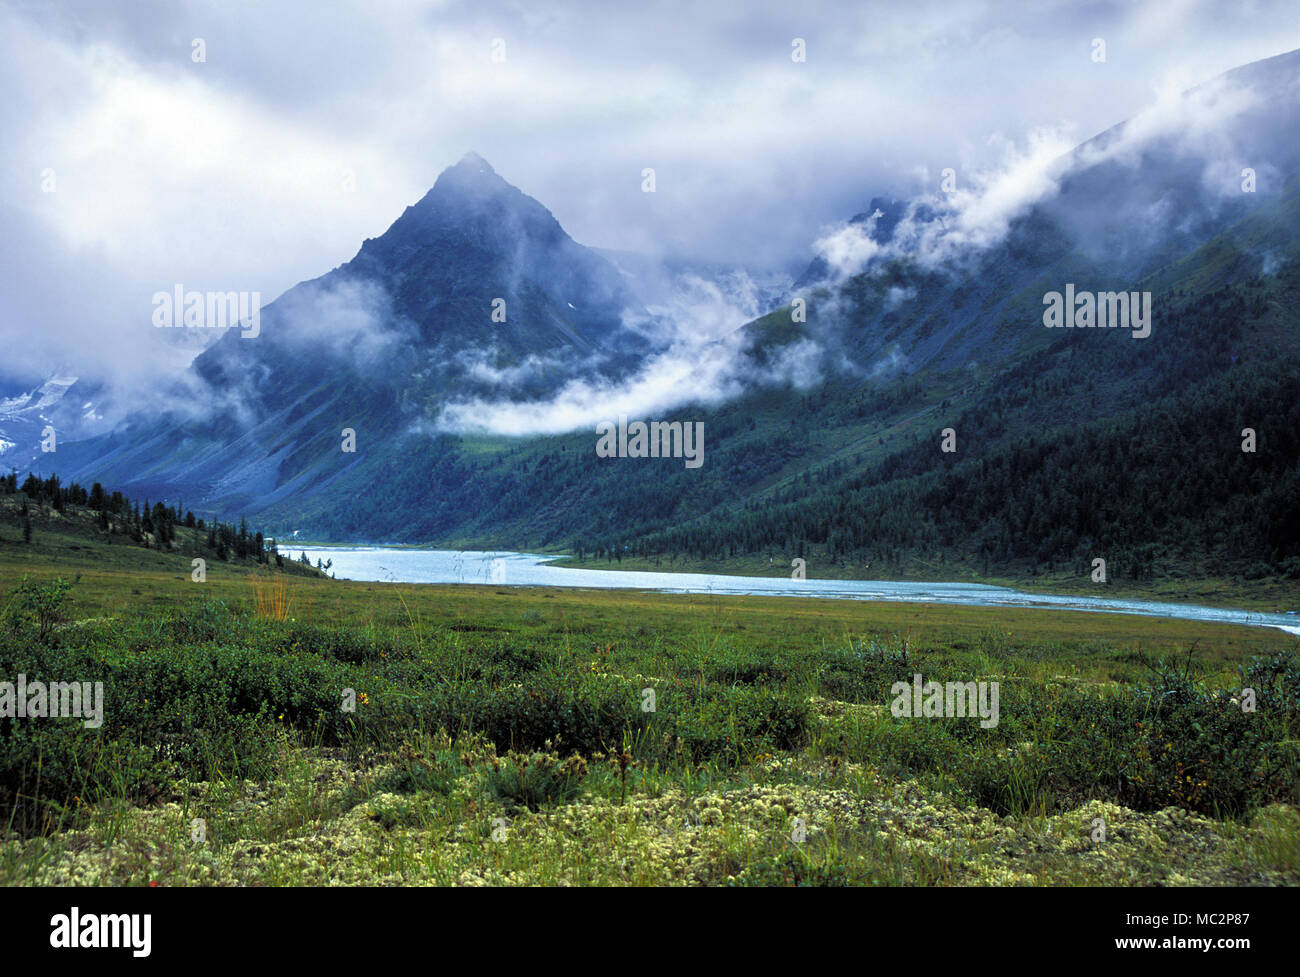 El pico de la montaña en las nubes cruzando el río. Ak-kem valley , Altai Foto de stock